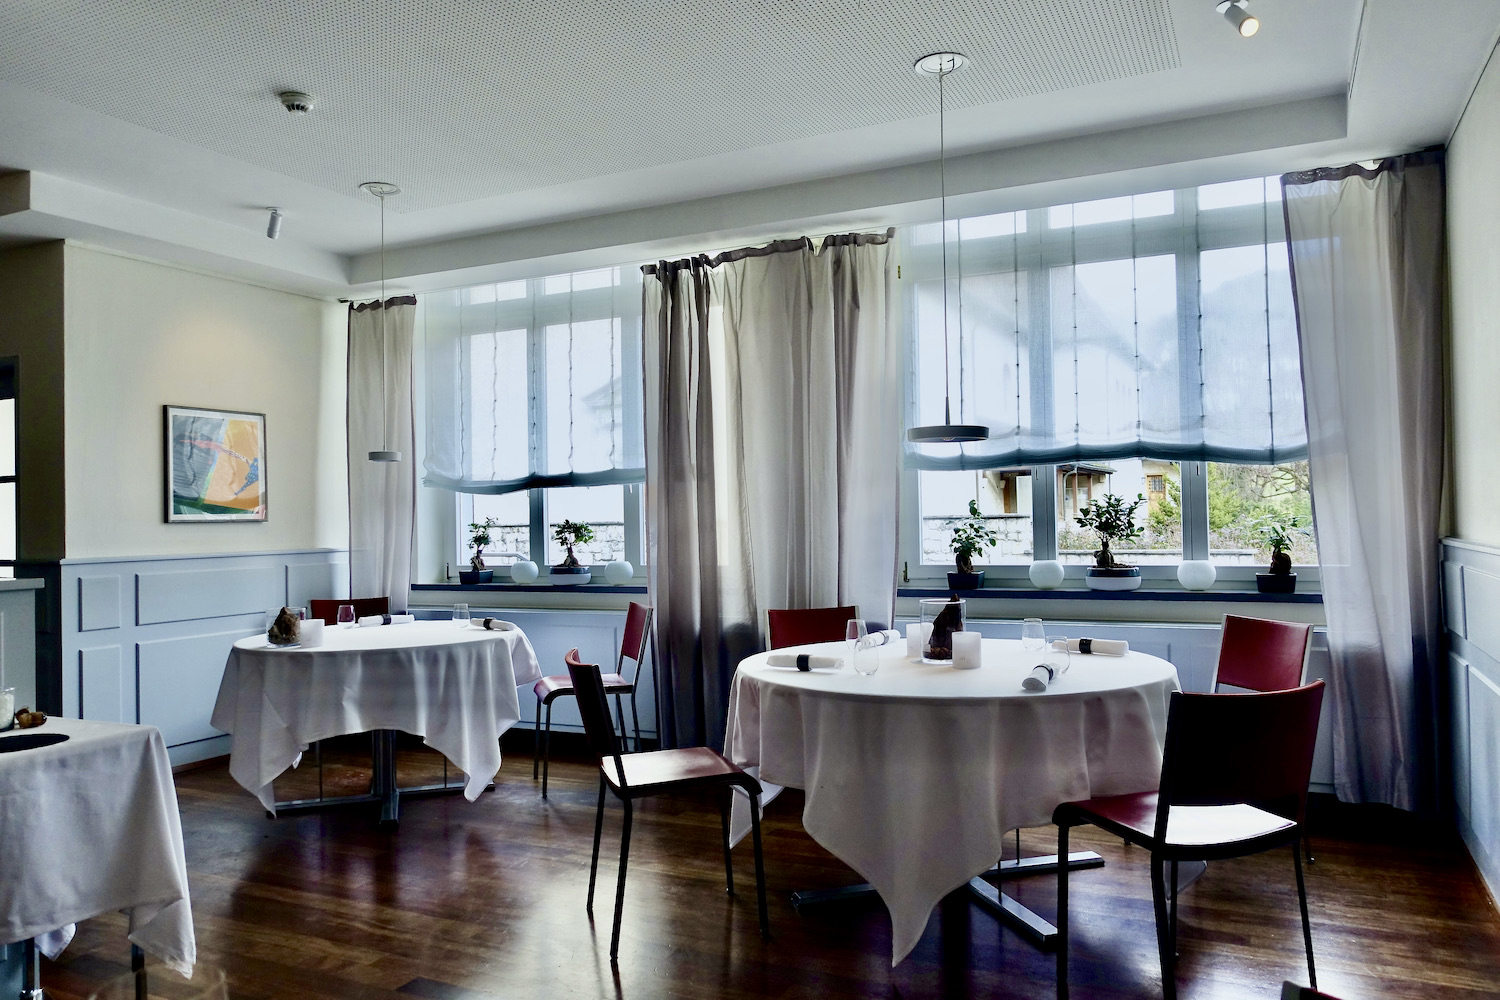 Restaurant Traube Trimbach/Olten, Switzerland